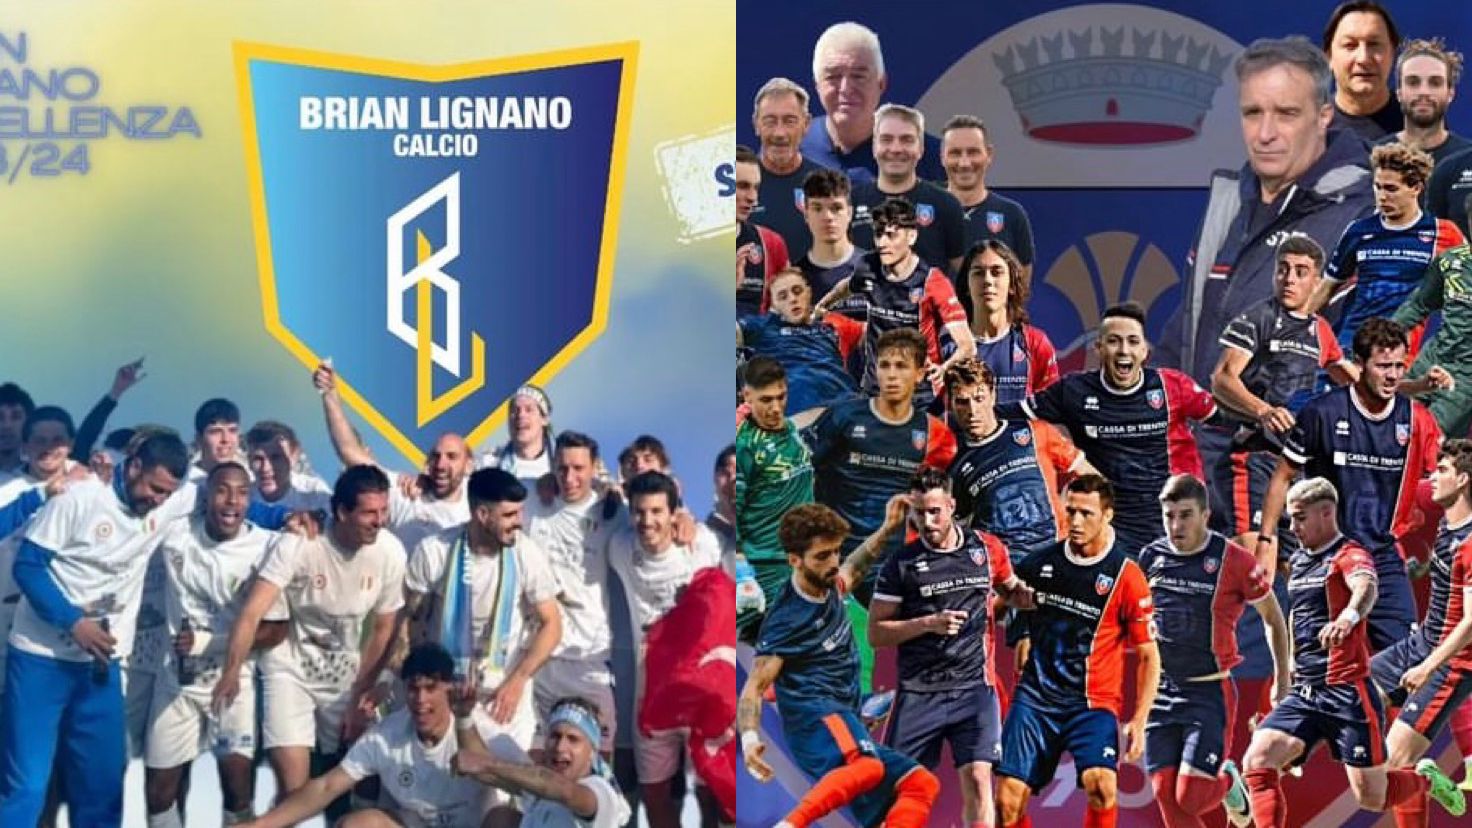 Serie D, due club festeggiano la storica promozione: Brian Lignano e Lavis in trionfo